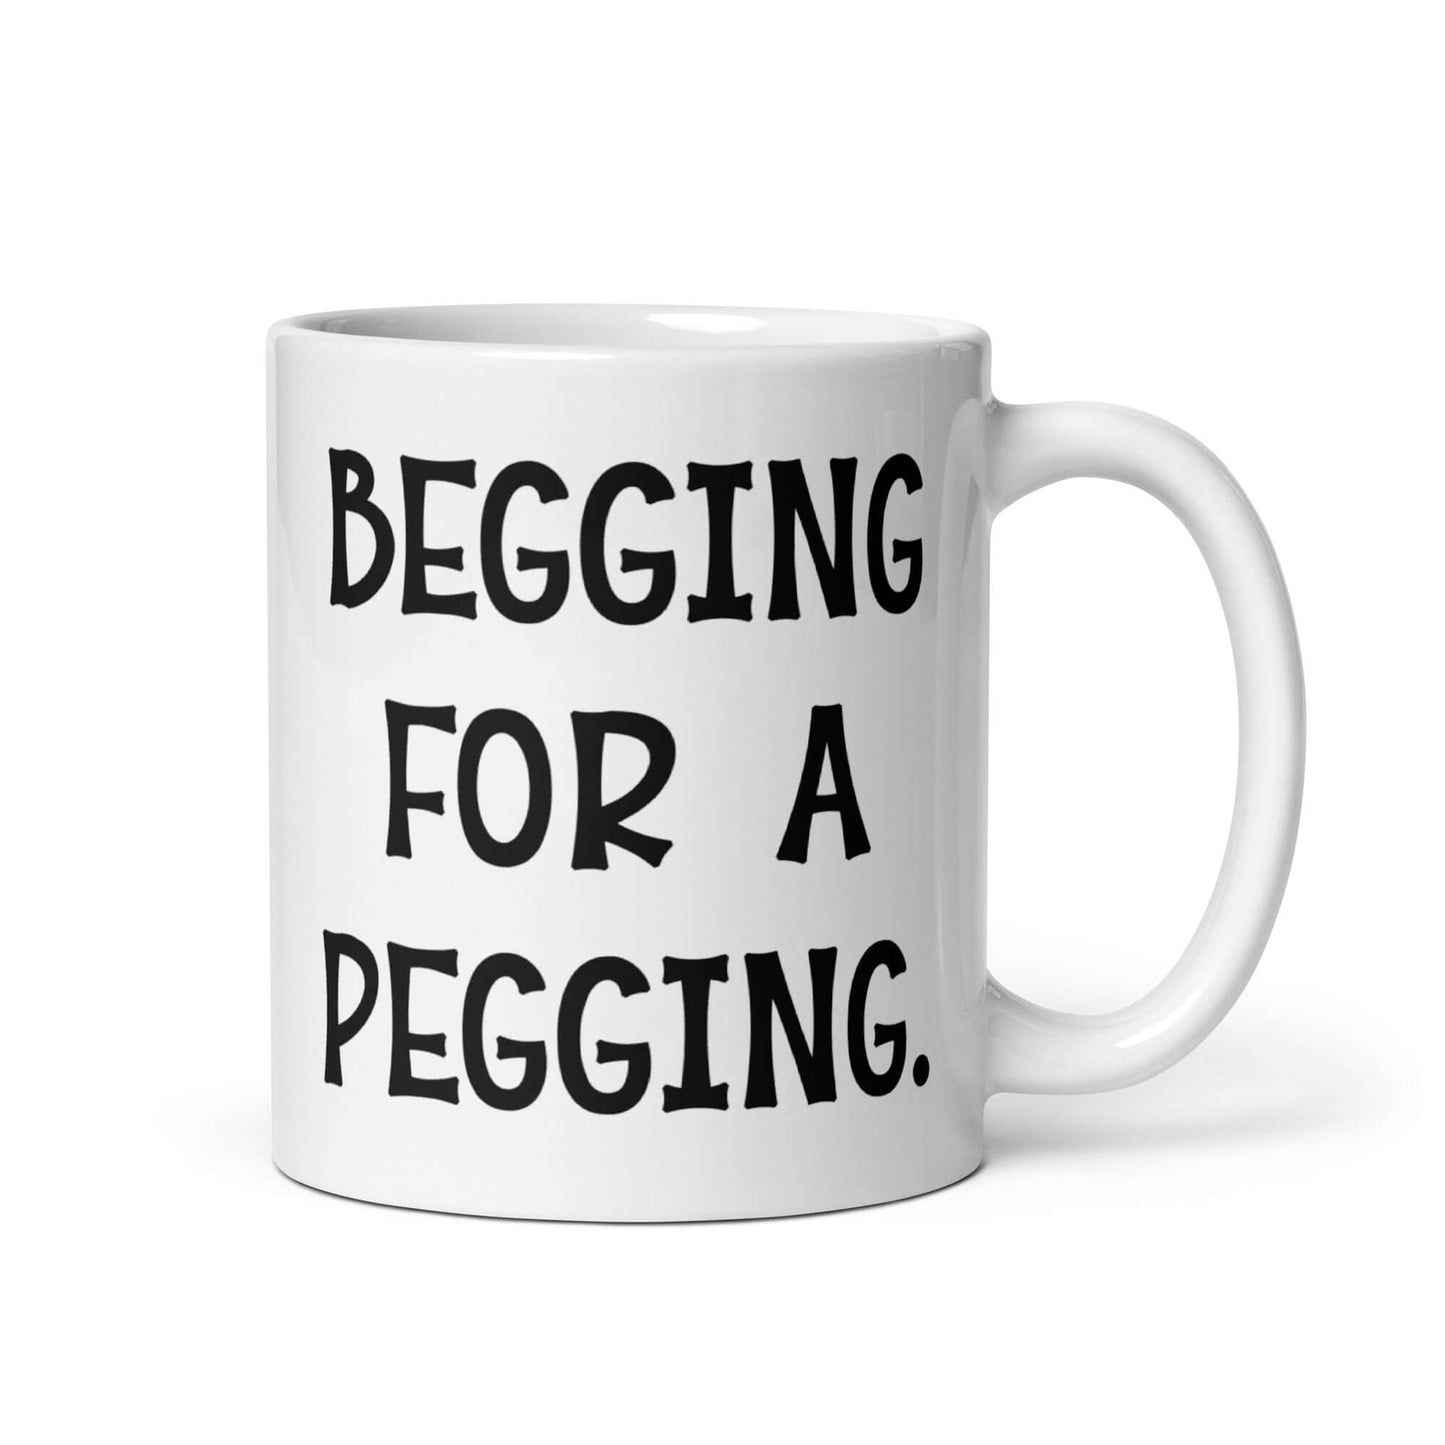 Begging for a pegging ceramic mug